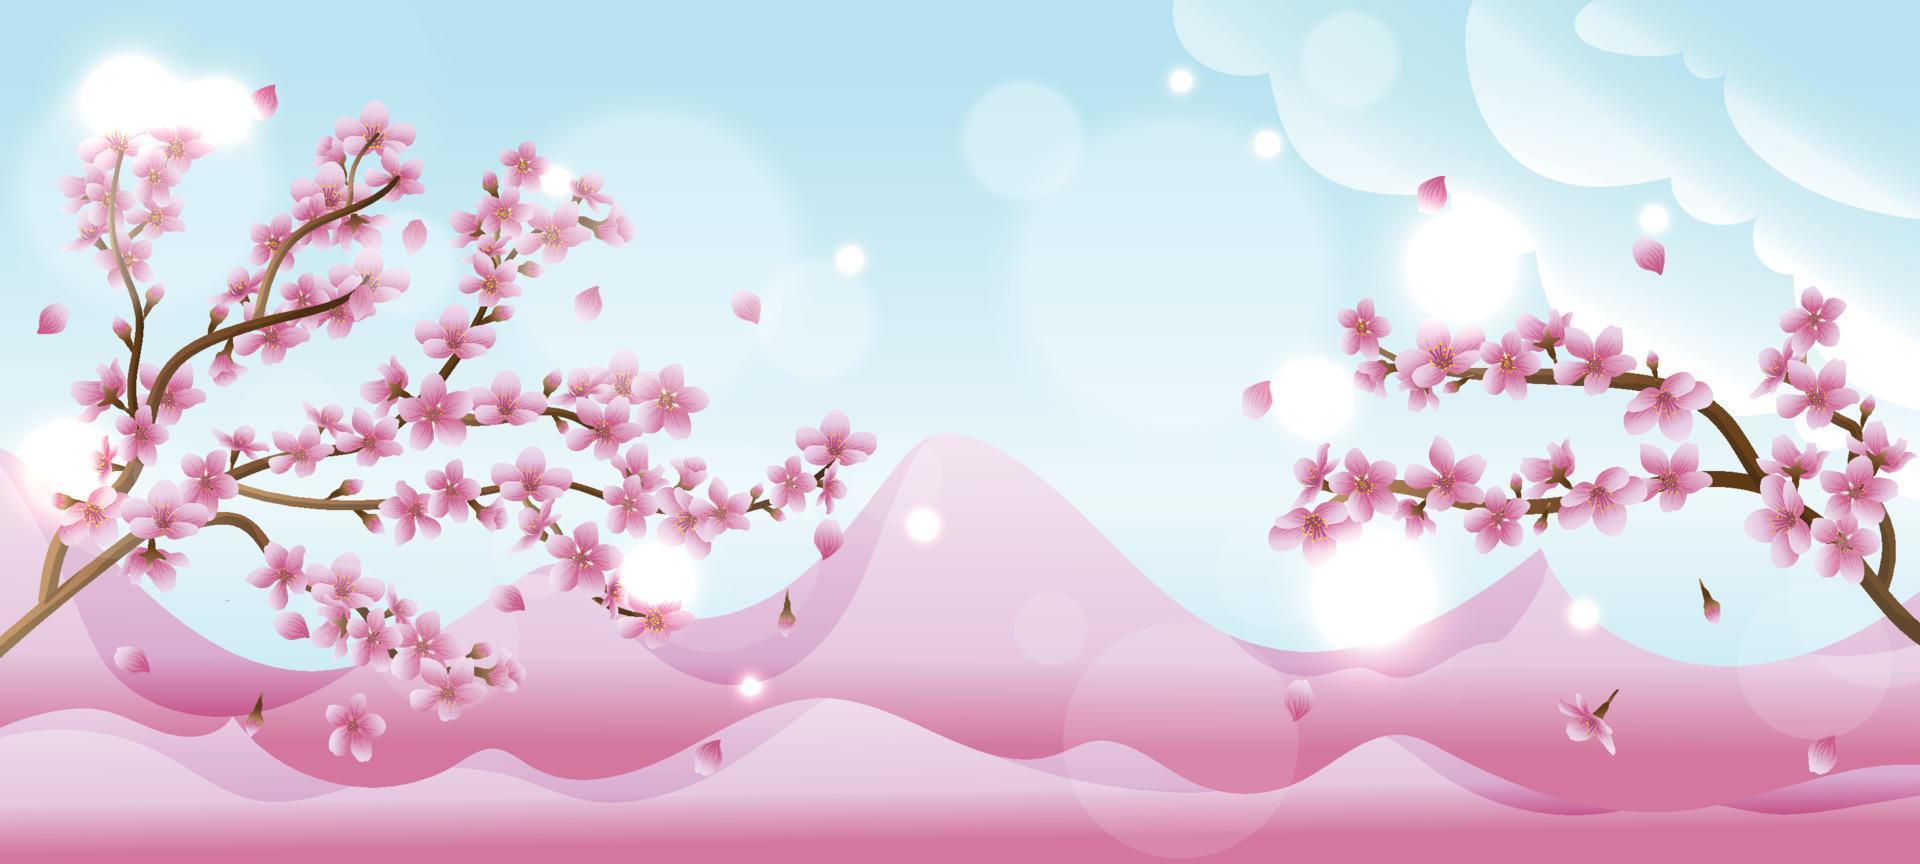 fundo de flor de cerejeira da primavera vetor